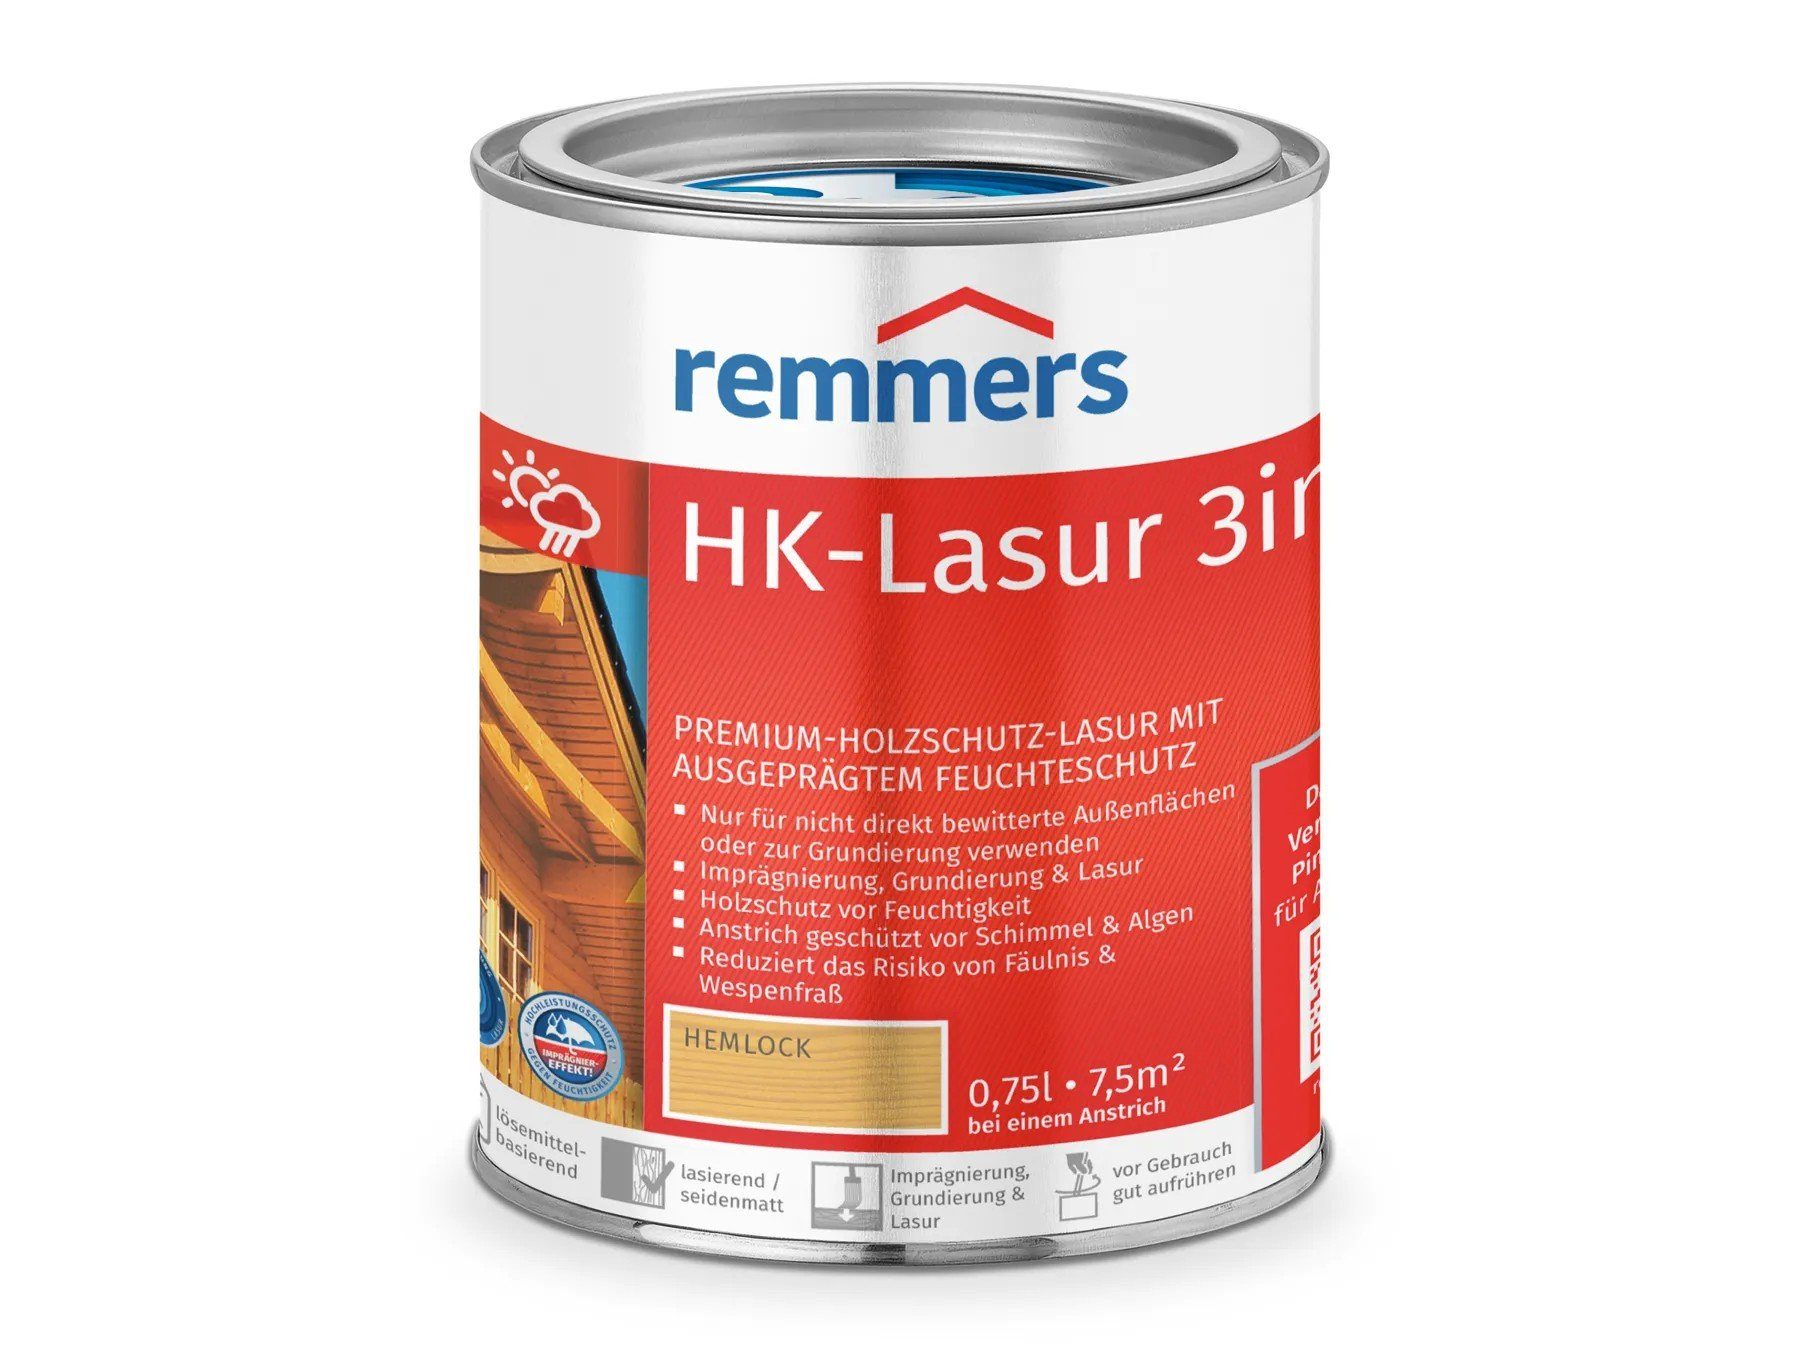 (RC-120) Holzschutzlasur 3in1 HK-Lasur Remmers hemlock